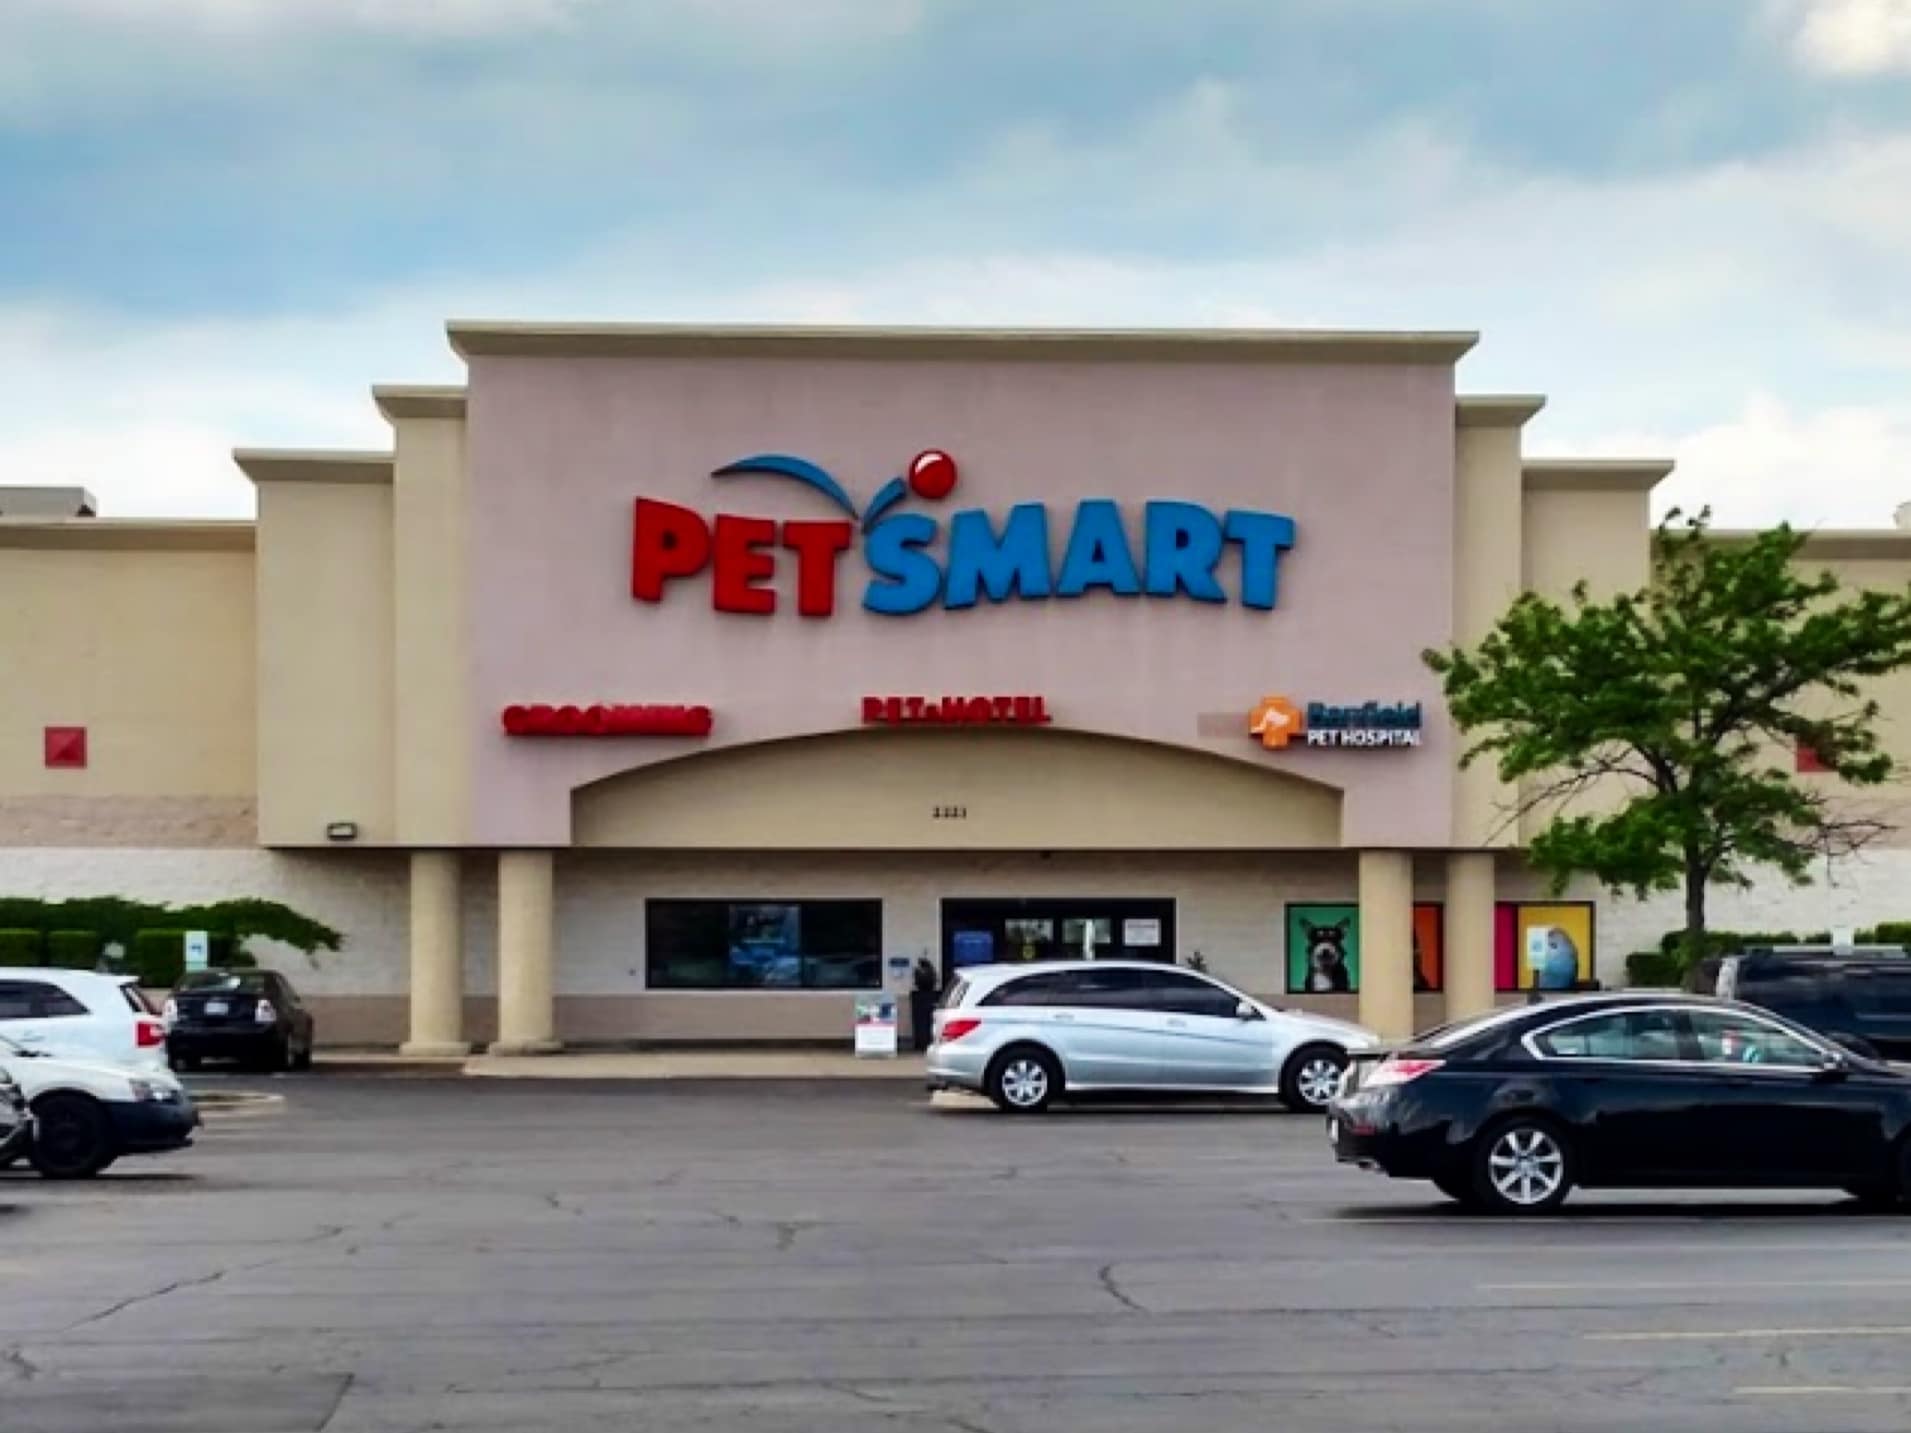 PetSmart - Evanston (IL 60202), US, pet supplies near me